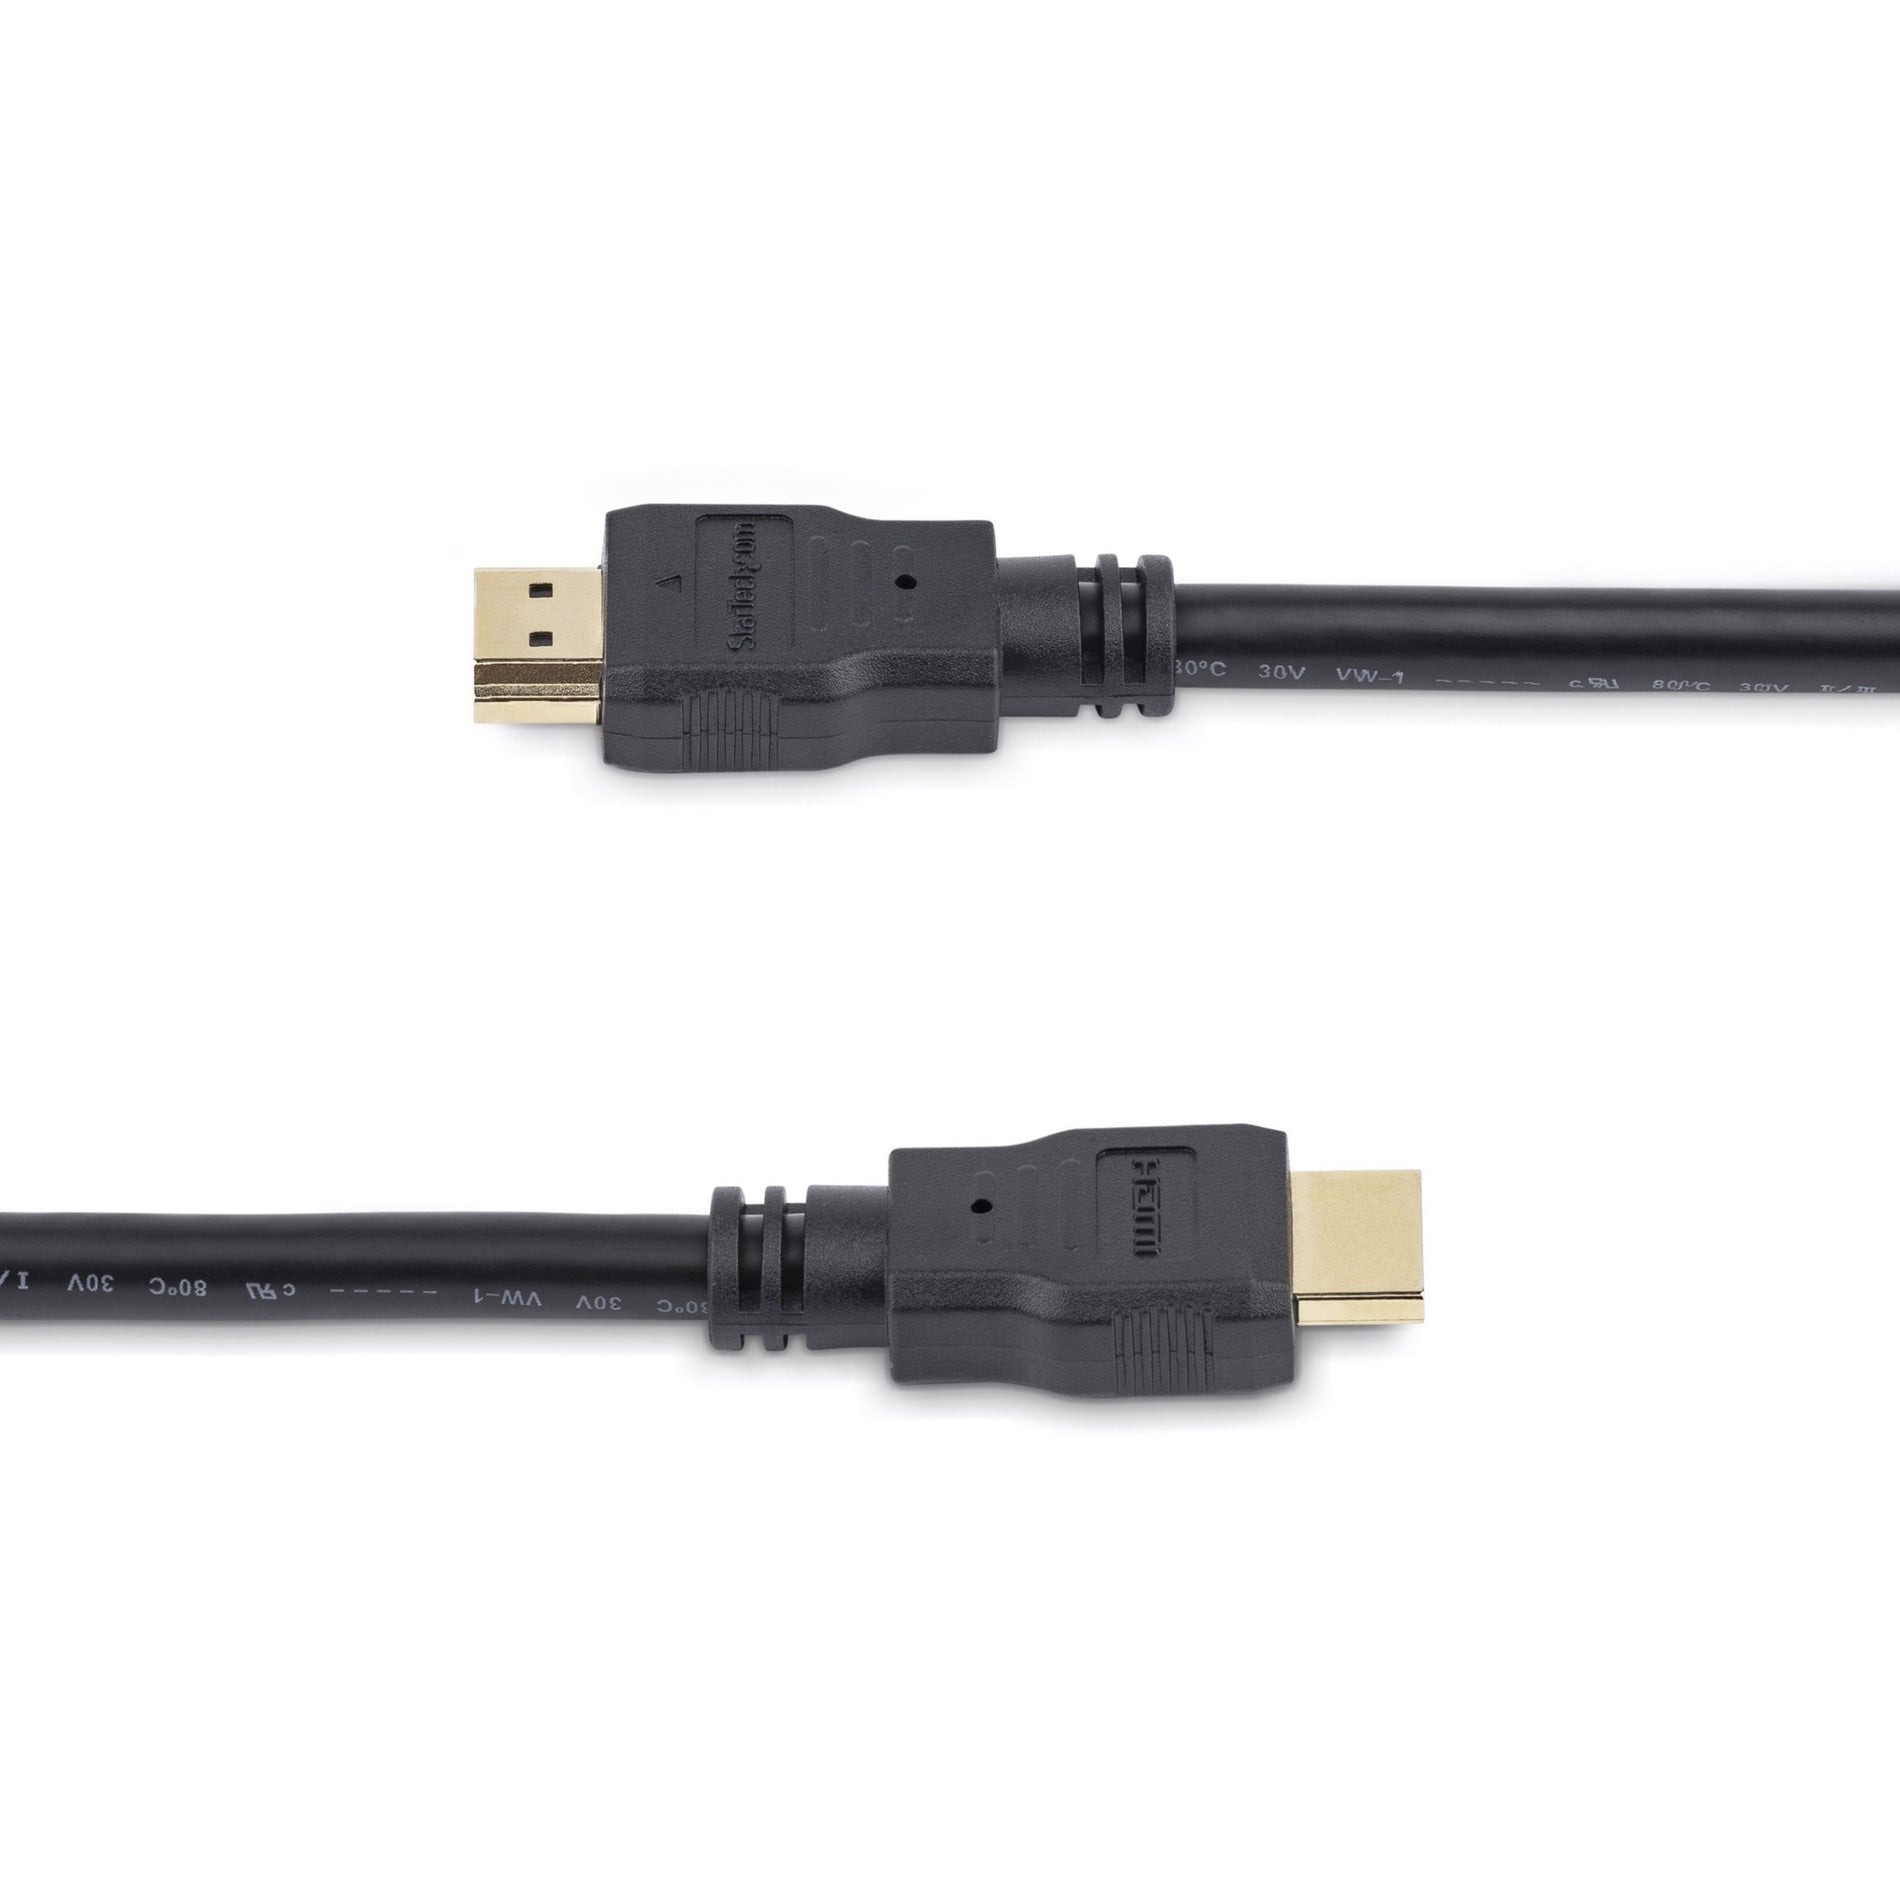 星道科技 HDMM50CM 0.5m 高速 HDMI 线 - 超高清 4k x 2k HDMI 线， 防拉力，耐腐蚀，成型，镀金连接器 星道科技